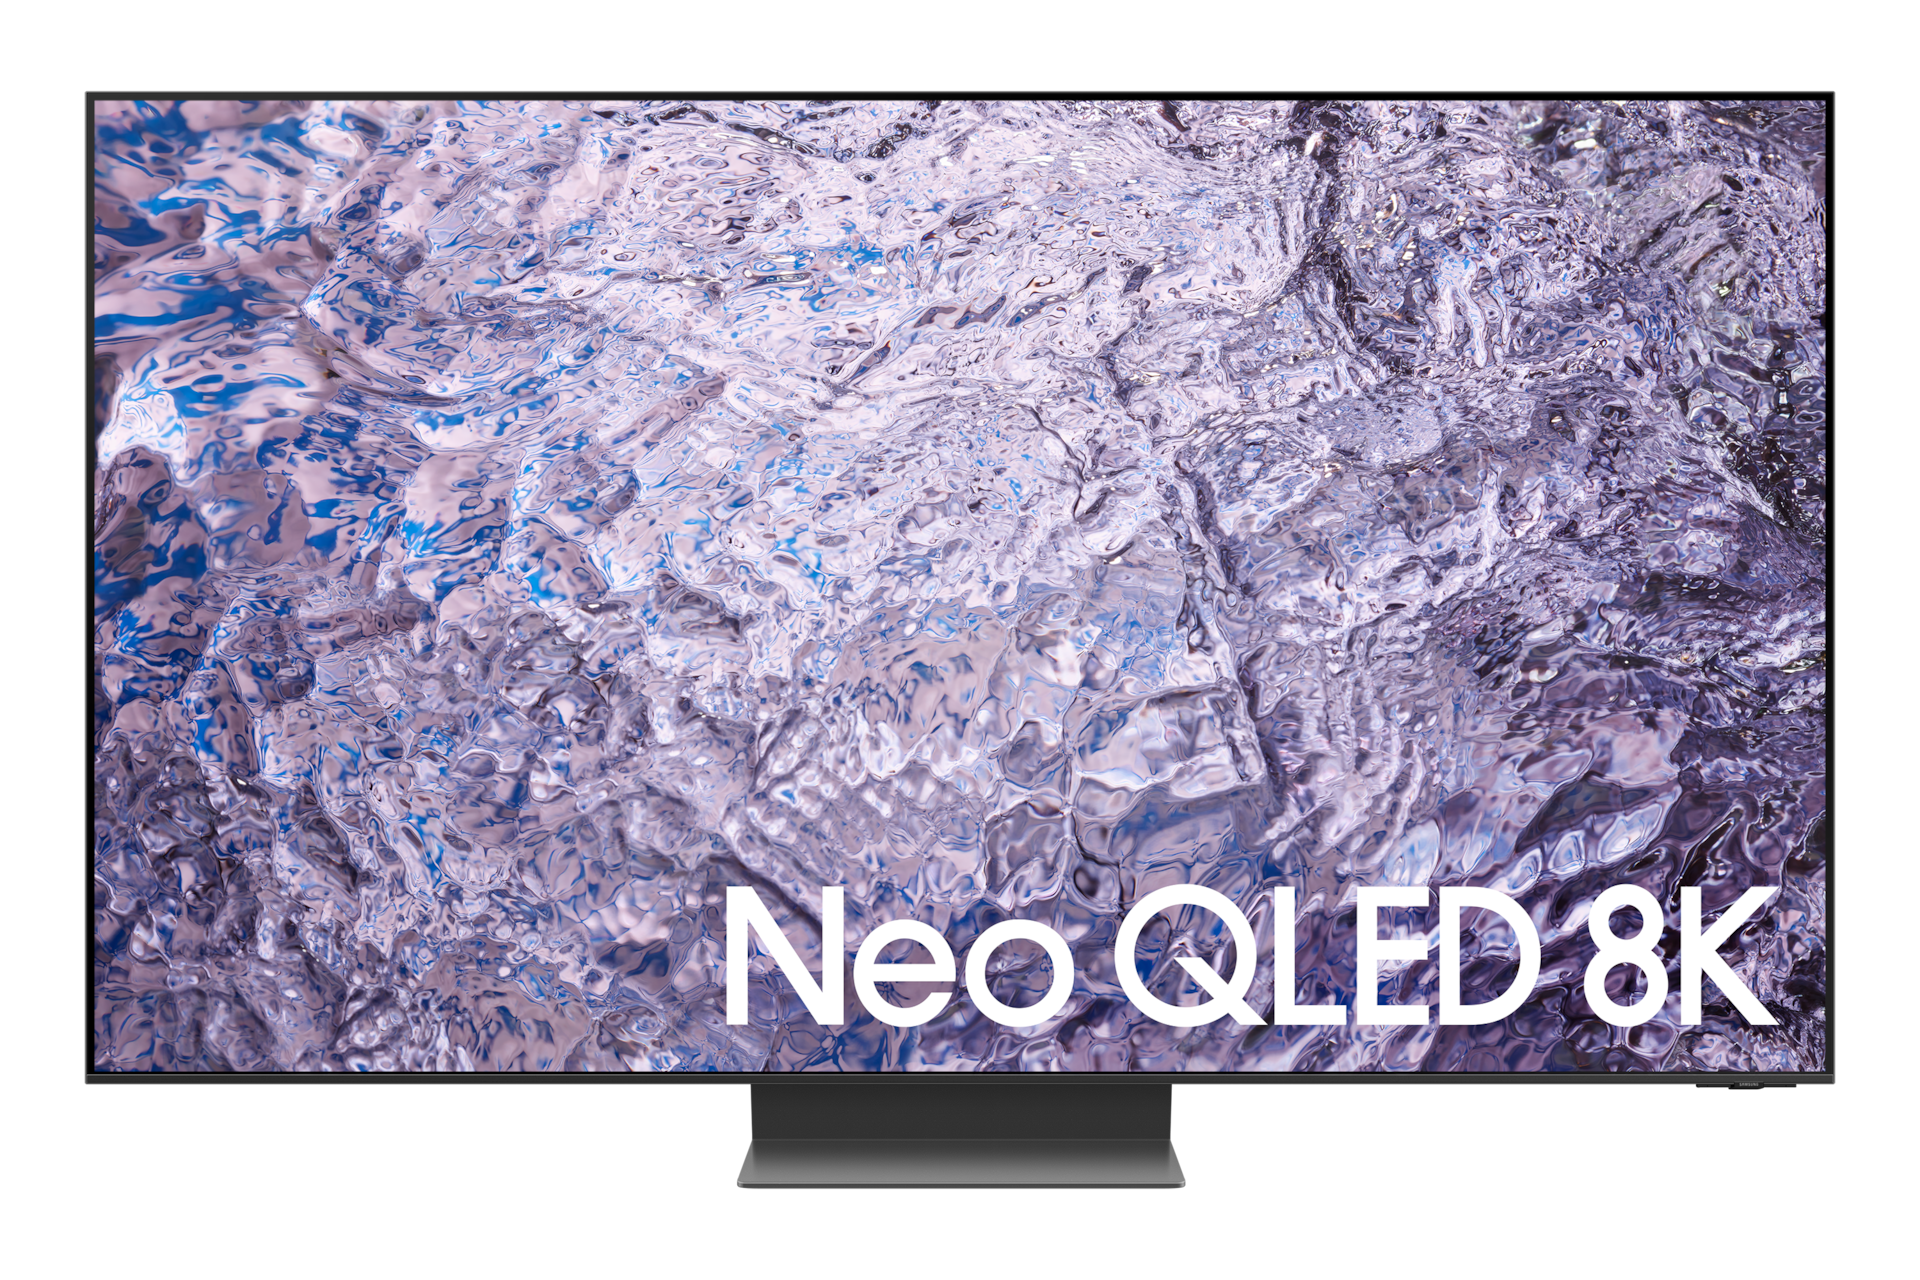 65" Neo QLED 8K QN800C Smart TV con diseño minimalista en posición frontal, tiene fondo de pantalla morado.